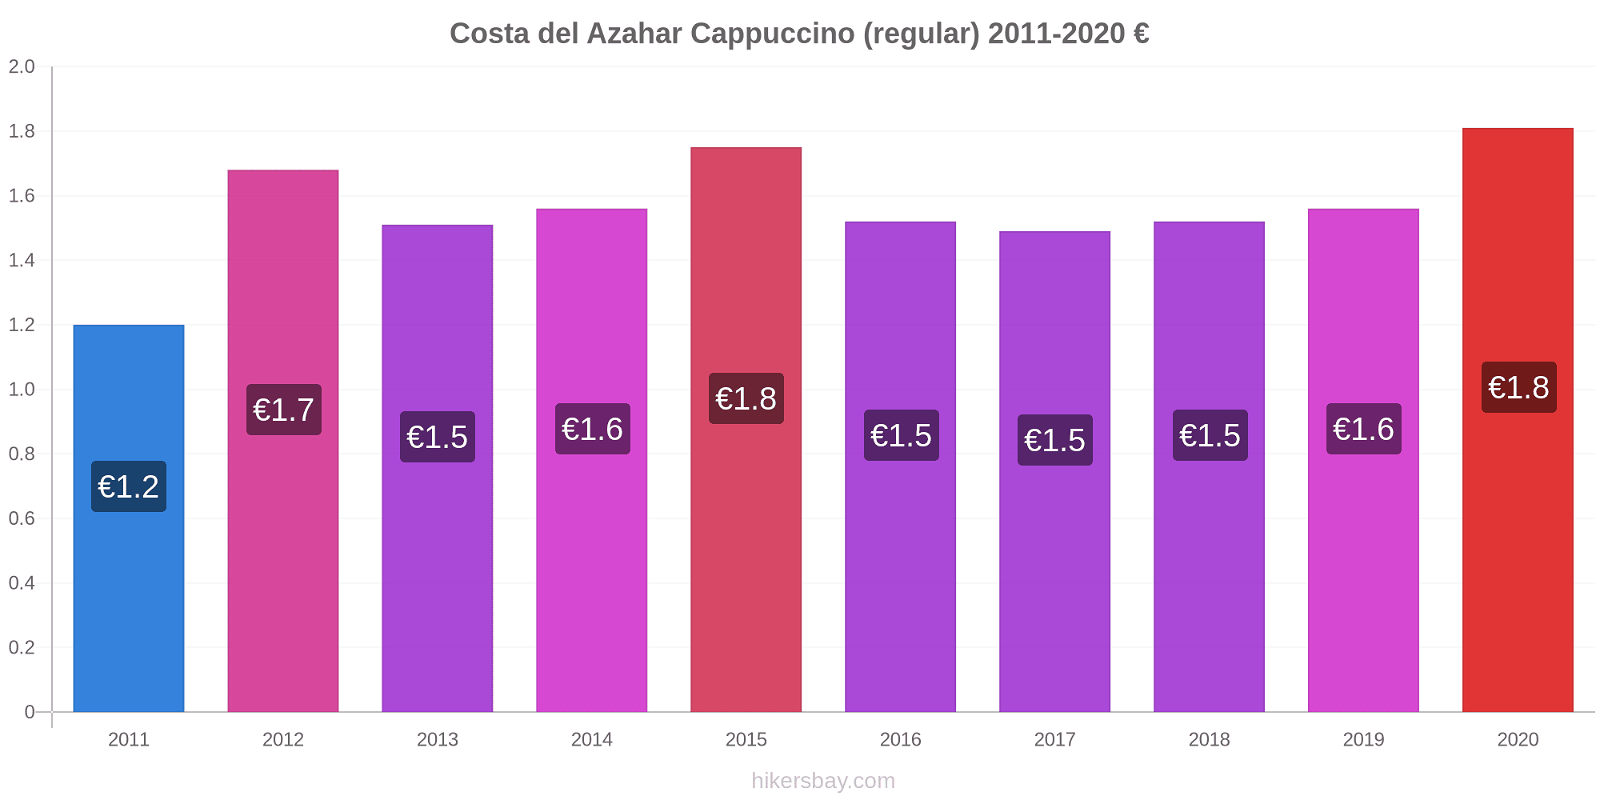 Costa del Azahar price changes Cappuccino (regular) hikersbay.com